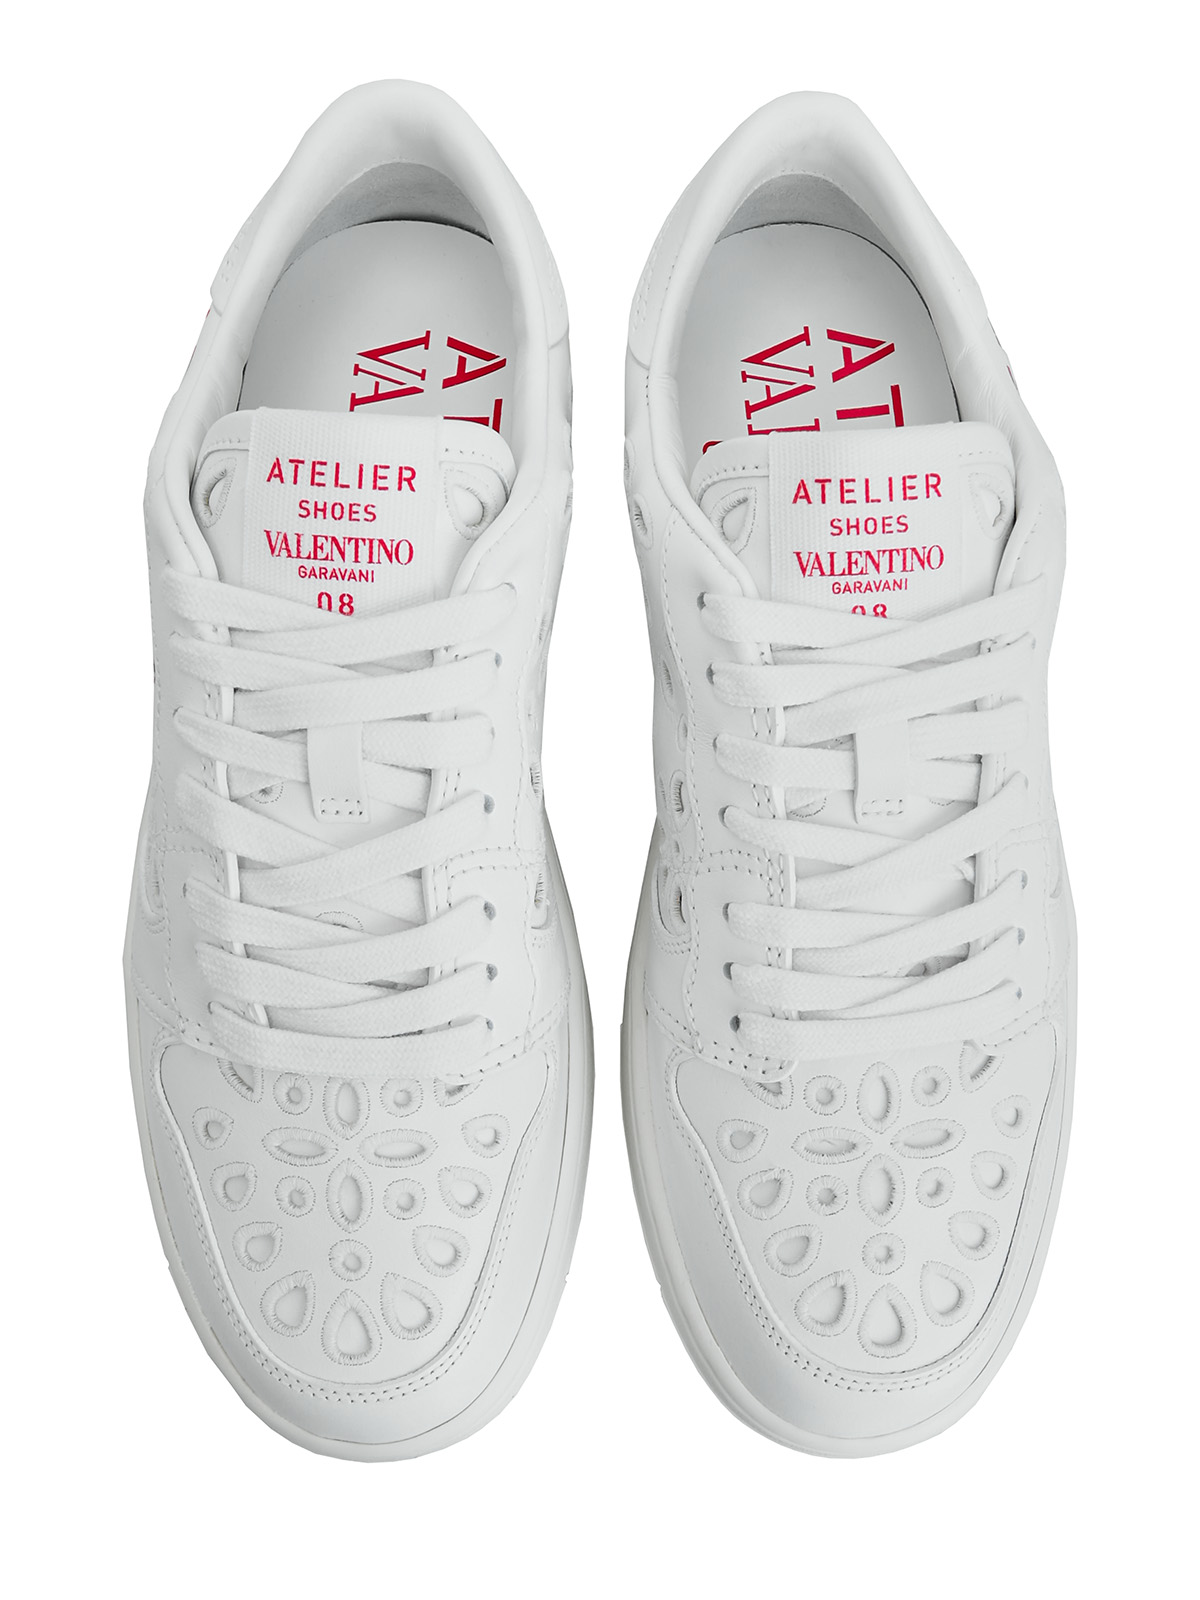 Кожаные кроссовки Atelier Shoes 08 San Gallo Edition VALENTINO GARAVANI, цвет белый, размер 36;36.5;37;37.5;38;38.5;39;40;39.5 - фото 5